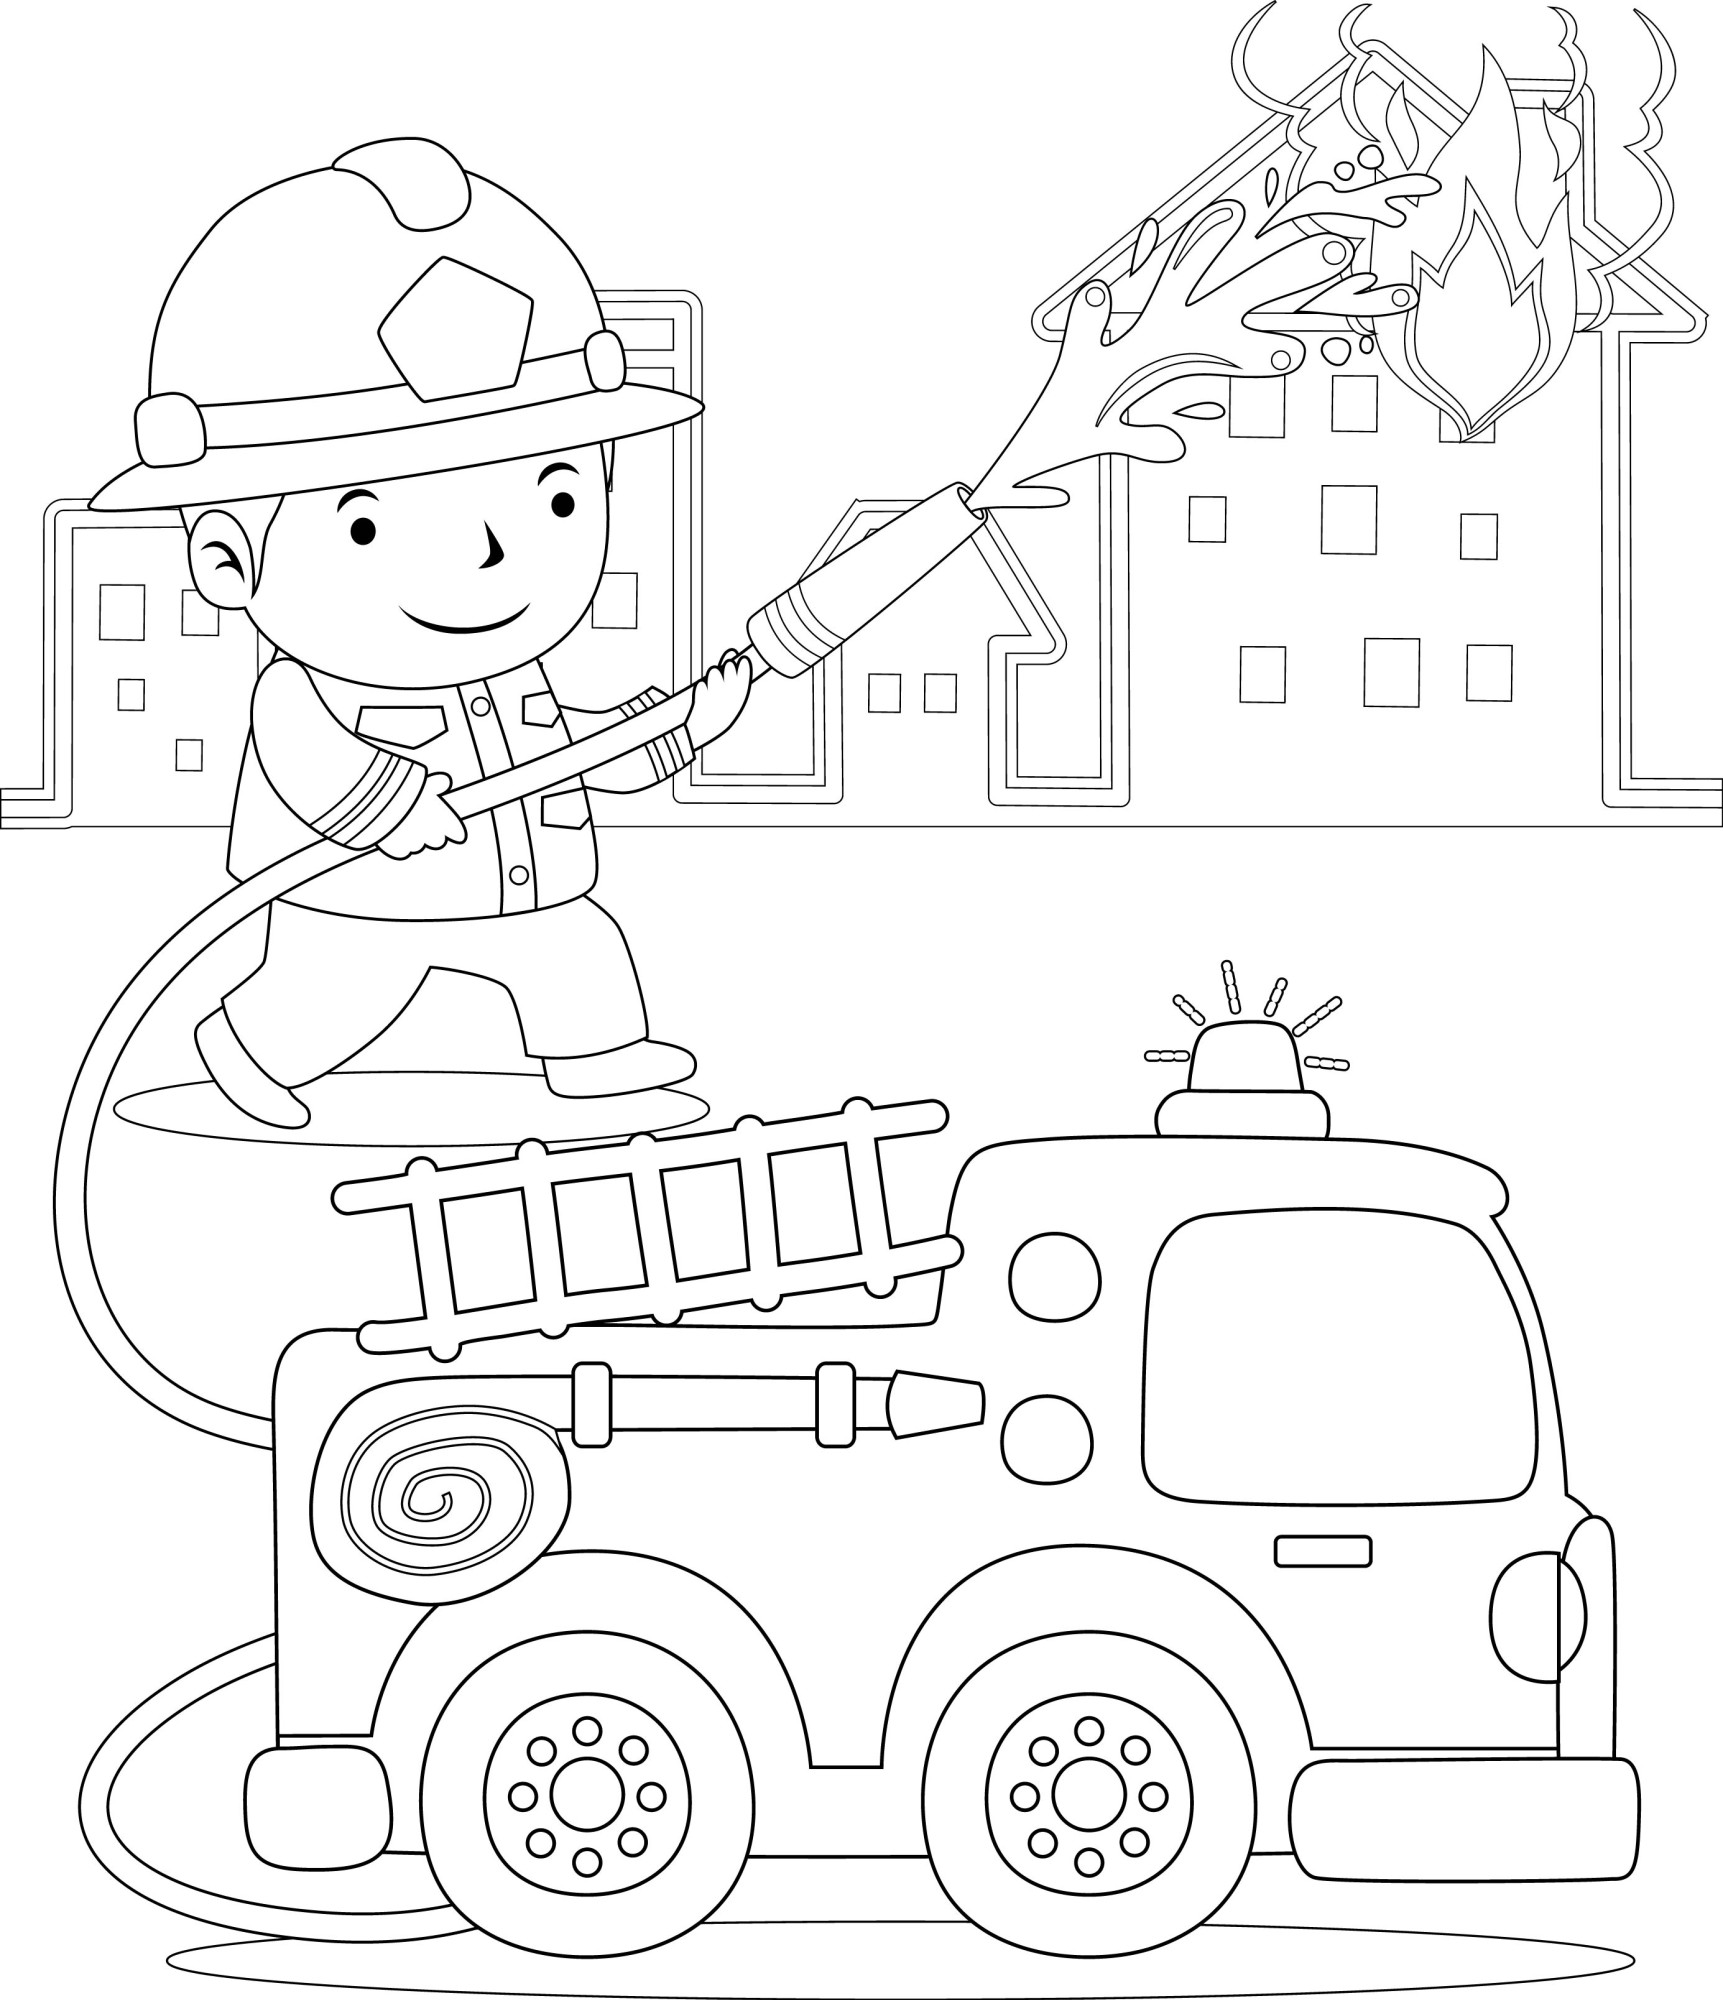 Раскраска для детей: пожарный тушит горящий дом